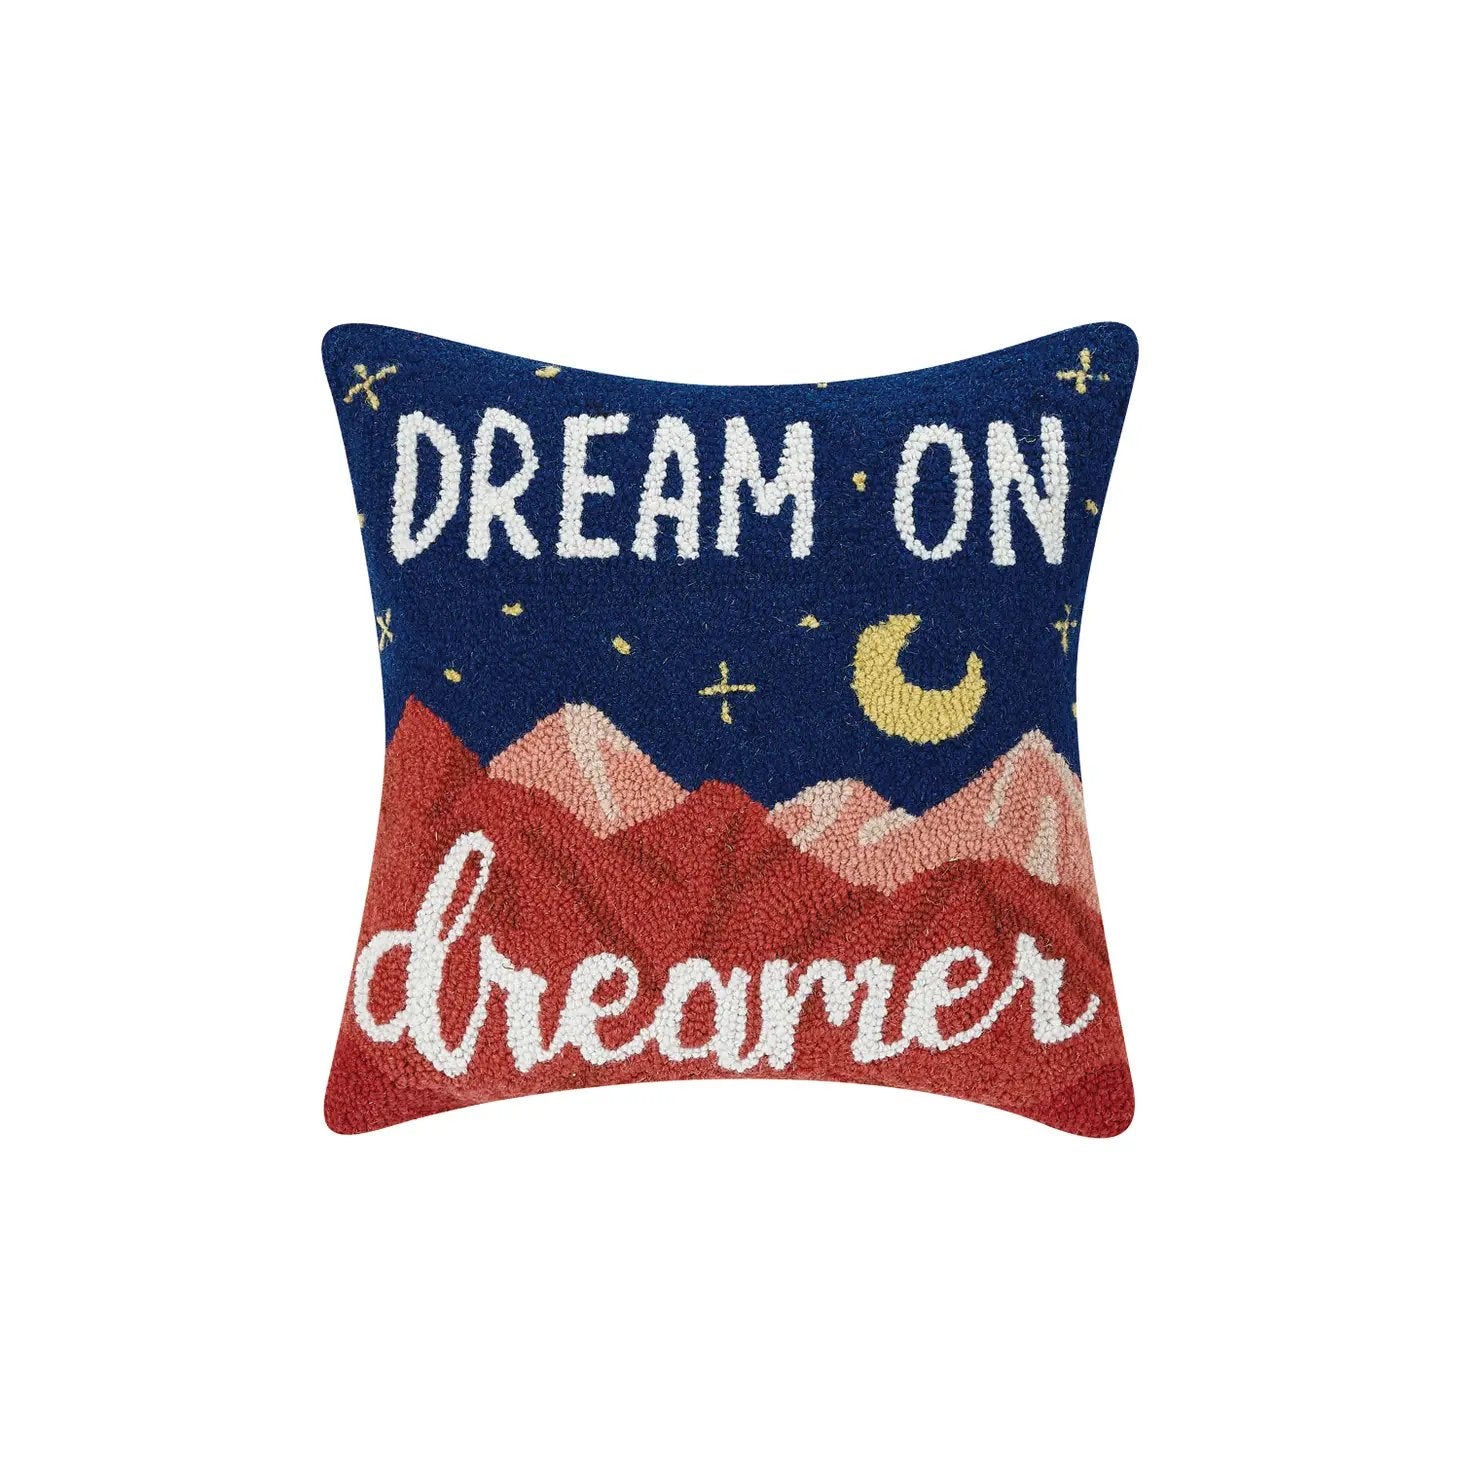 Dream On Dreamer Hook Pillow - Pillows